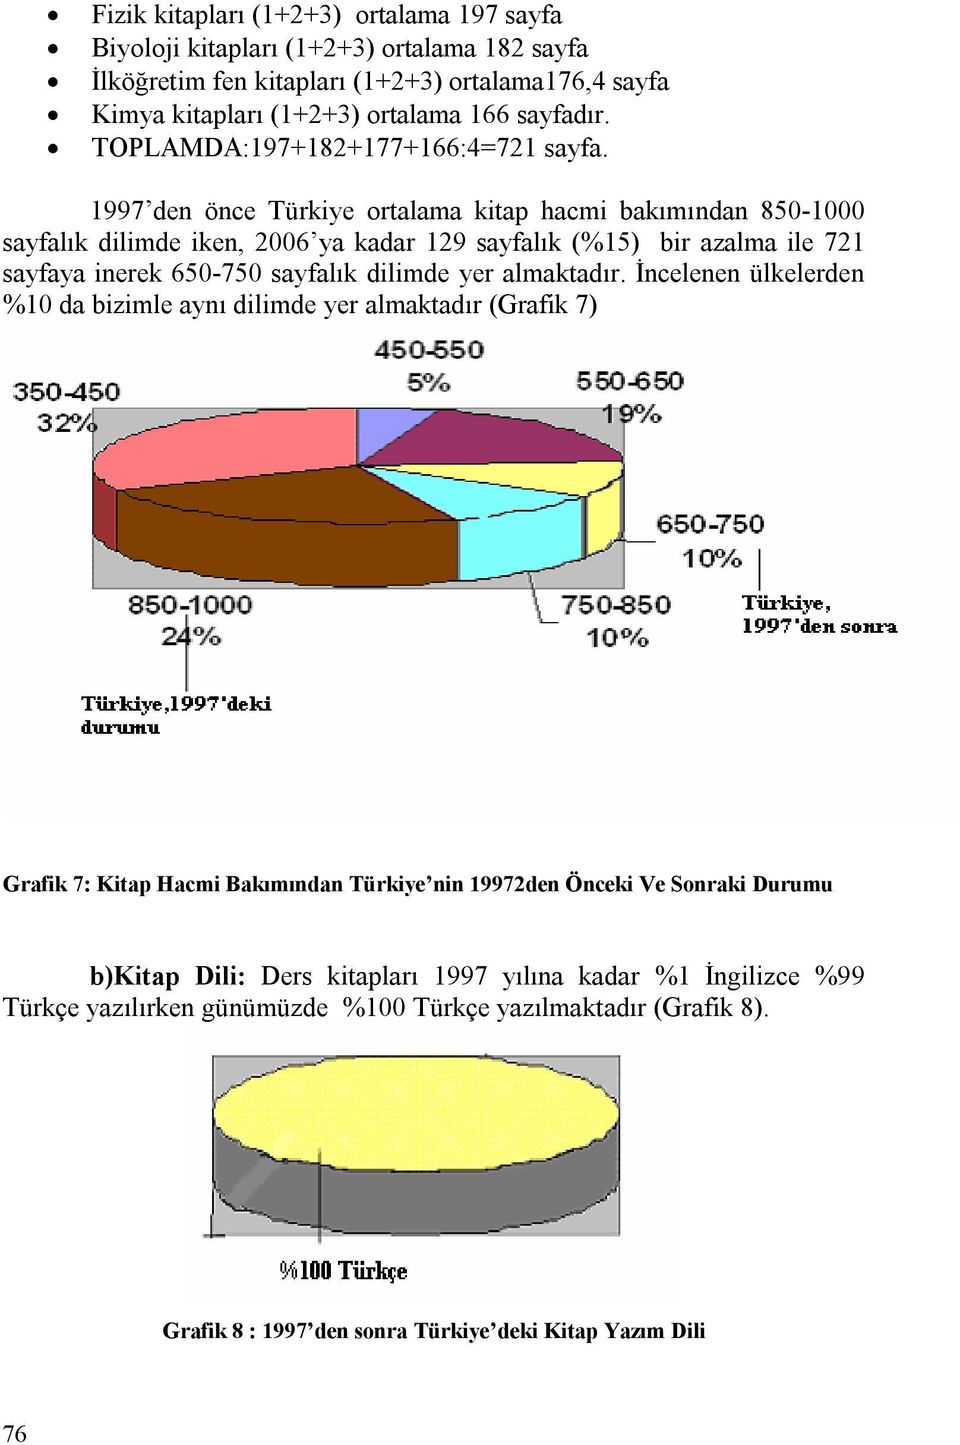 1997 den önce Türkiye ortalama kitap hacmi bakımından 850-1000 sayfalık dilimde iken, 2006 ya kadar 129 sayfalık (%15) bir azalma ile 721 sayfaya inerek 650-750 sayfalık dilimde yer